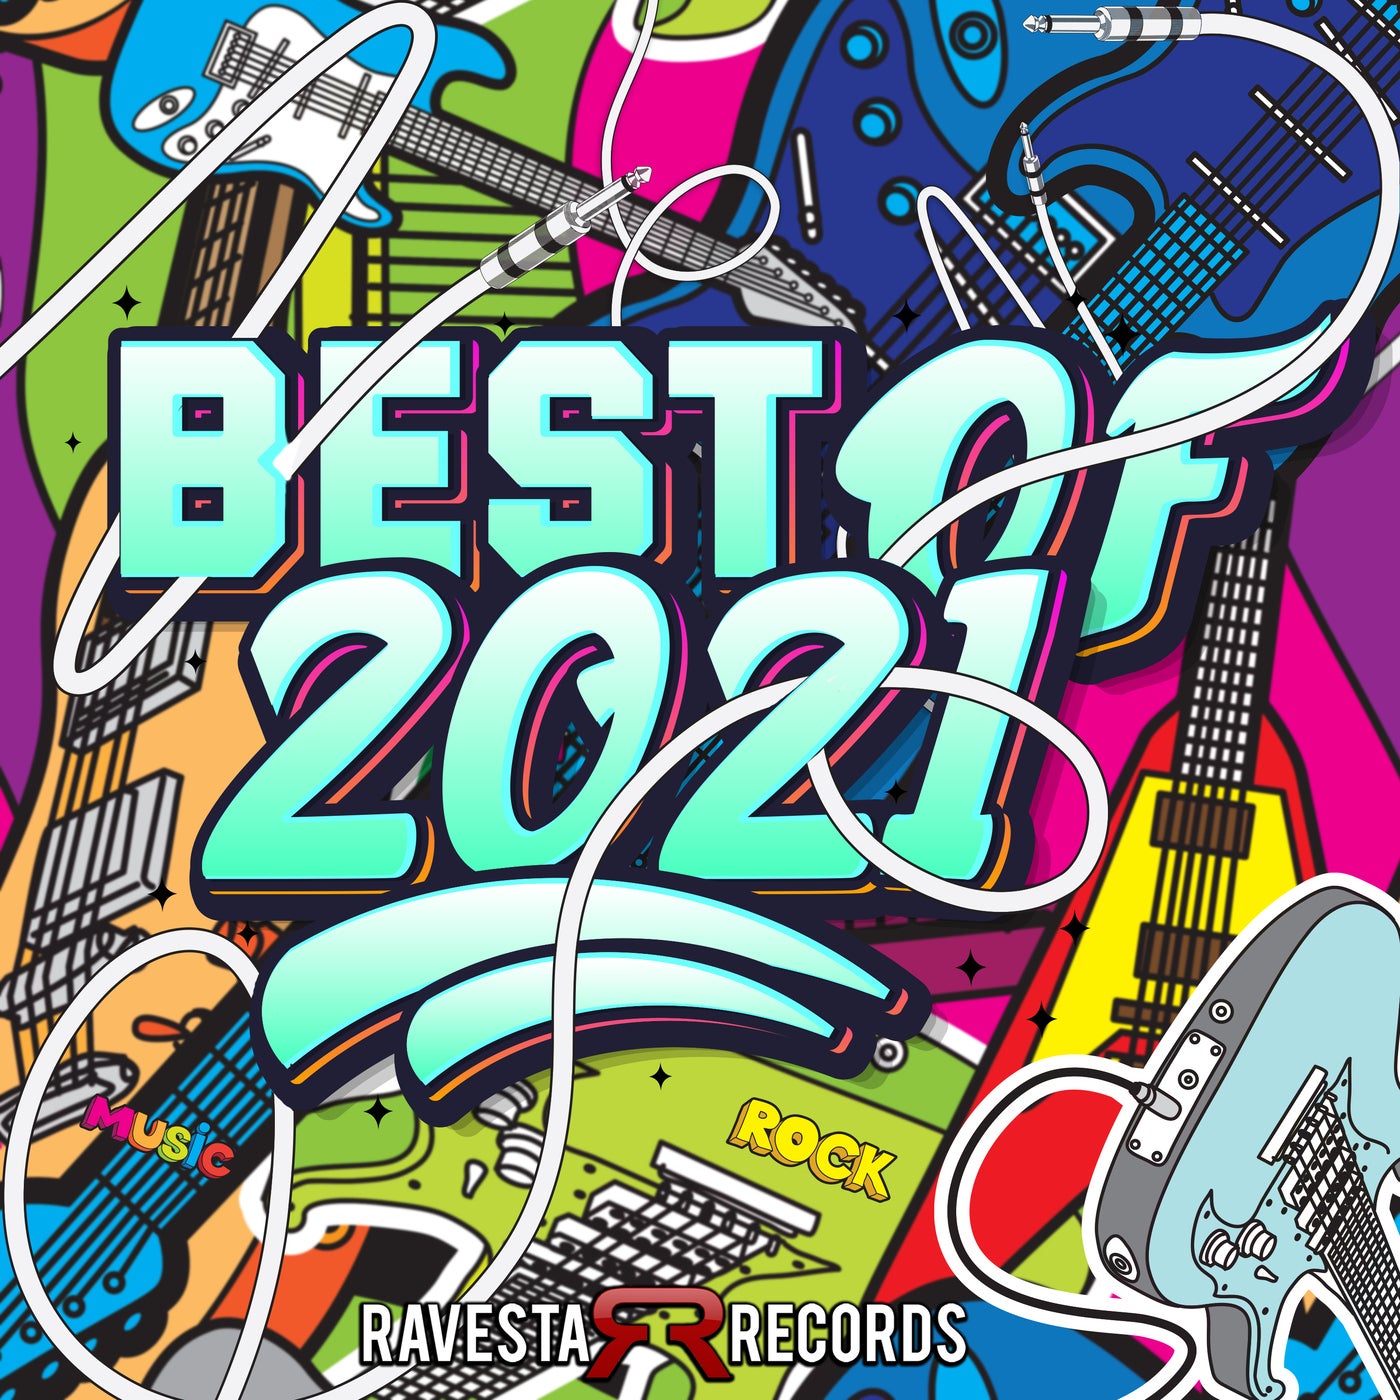 Best Of 2021